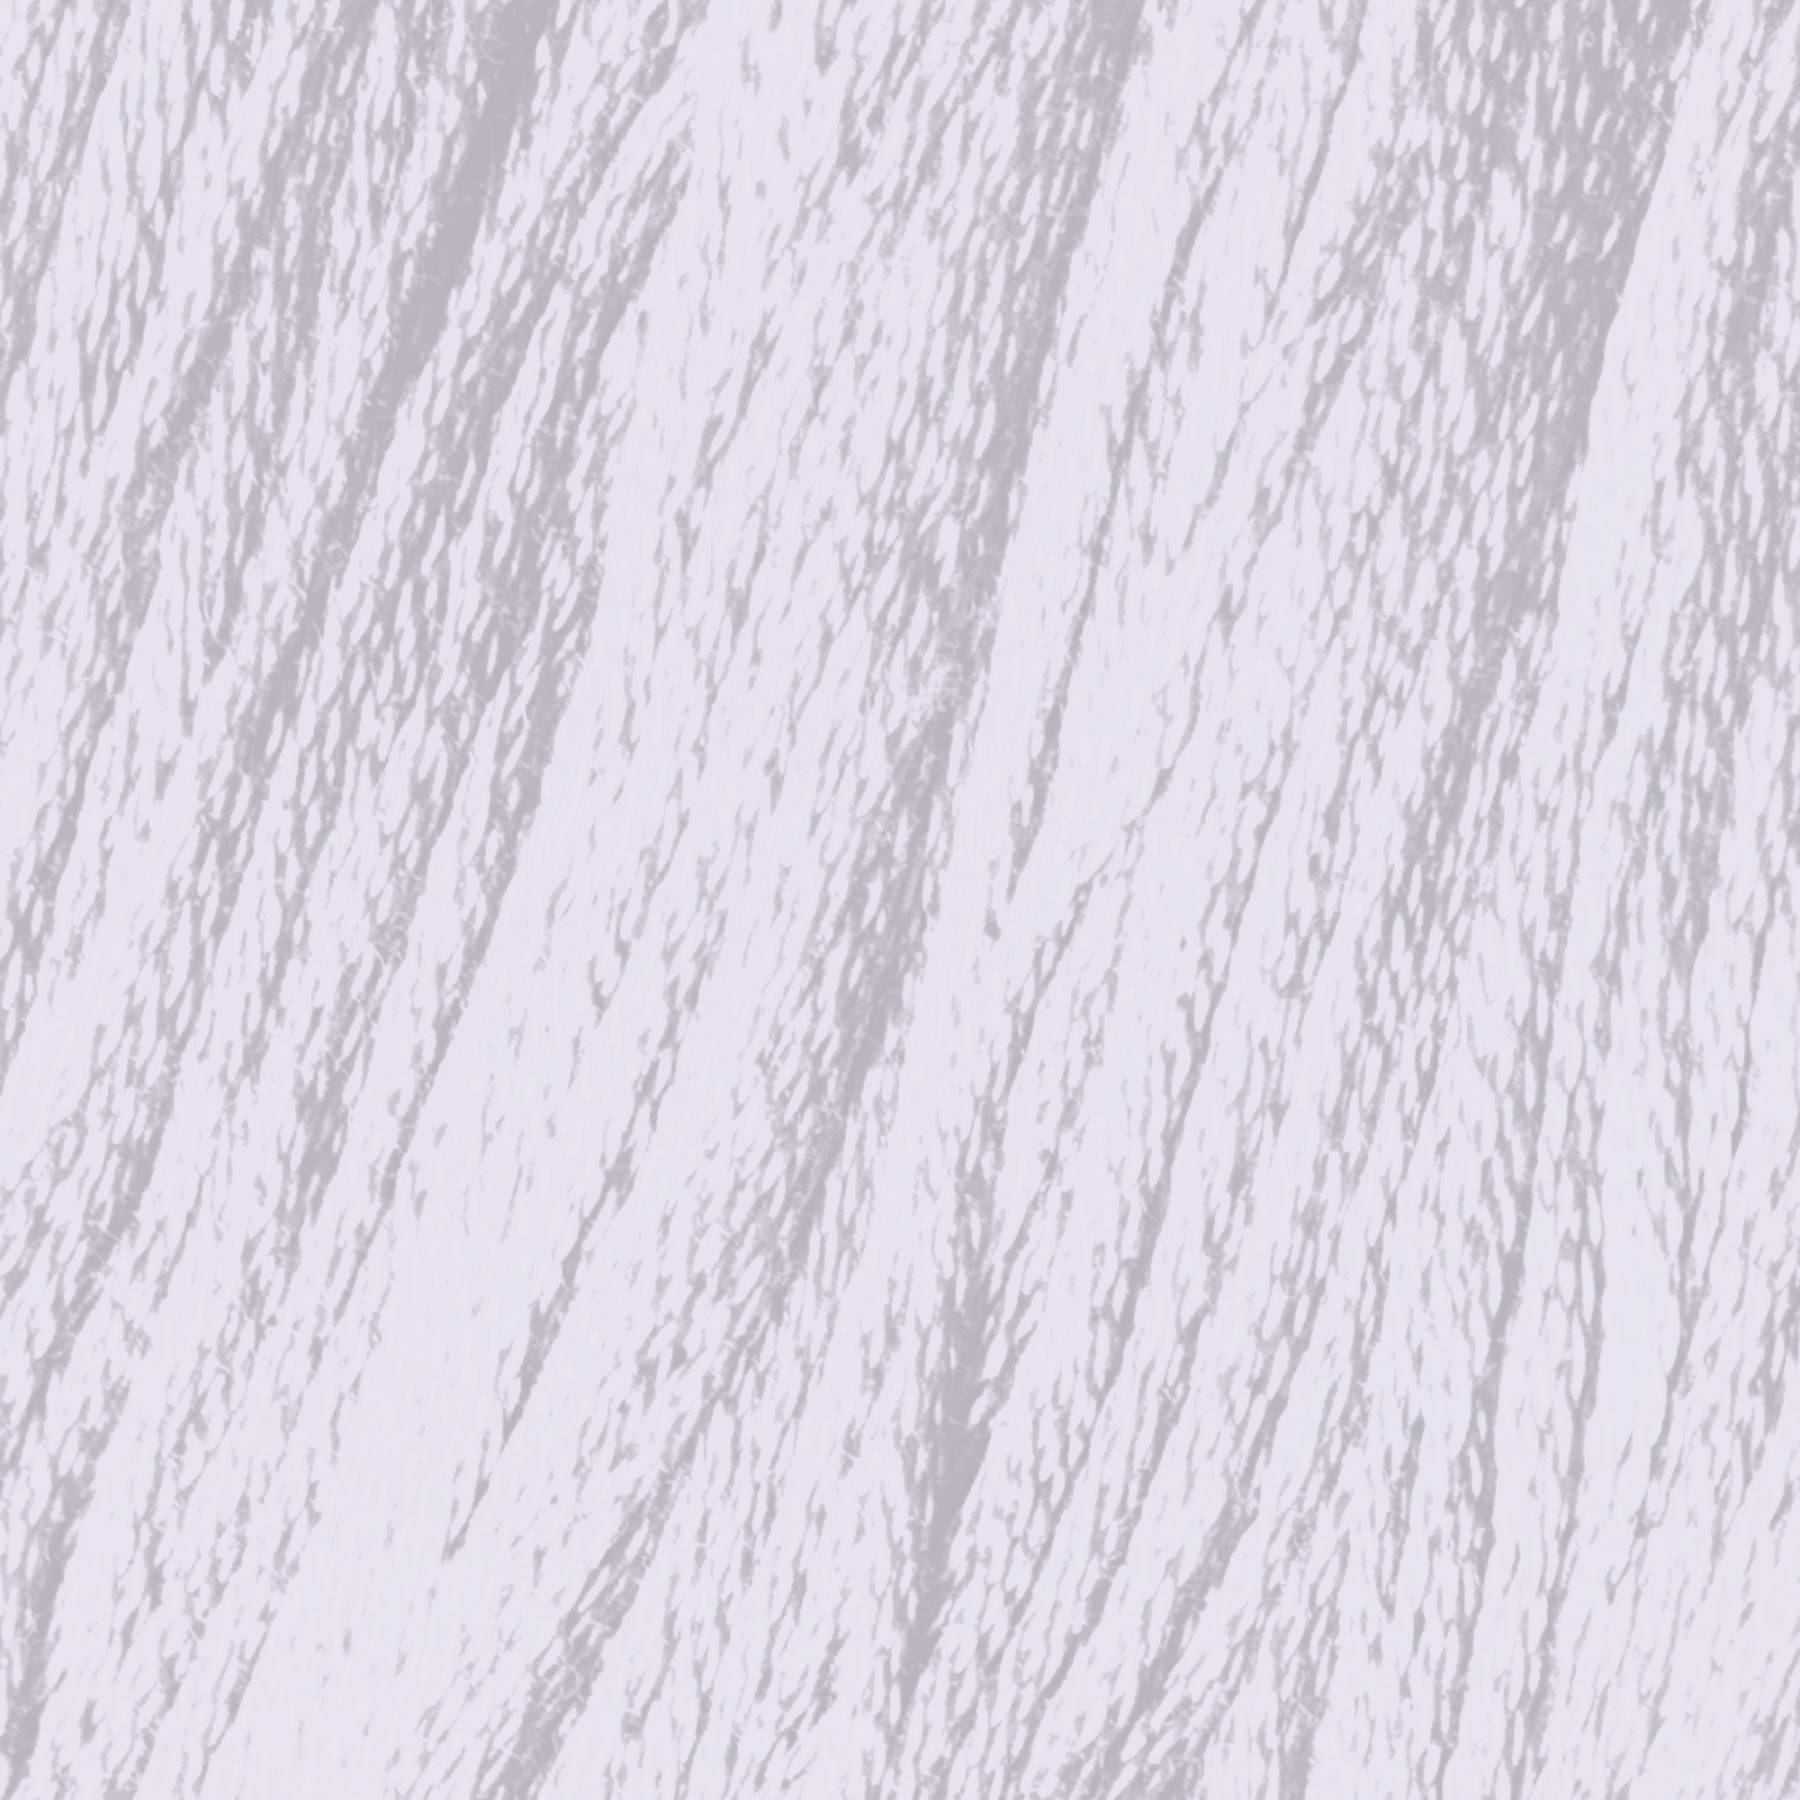 DMC 27 White Violet - 6 Strand Embroidery Floss